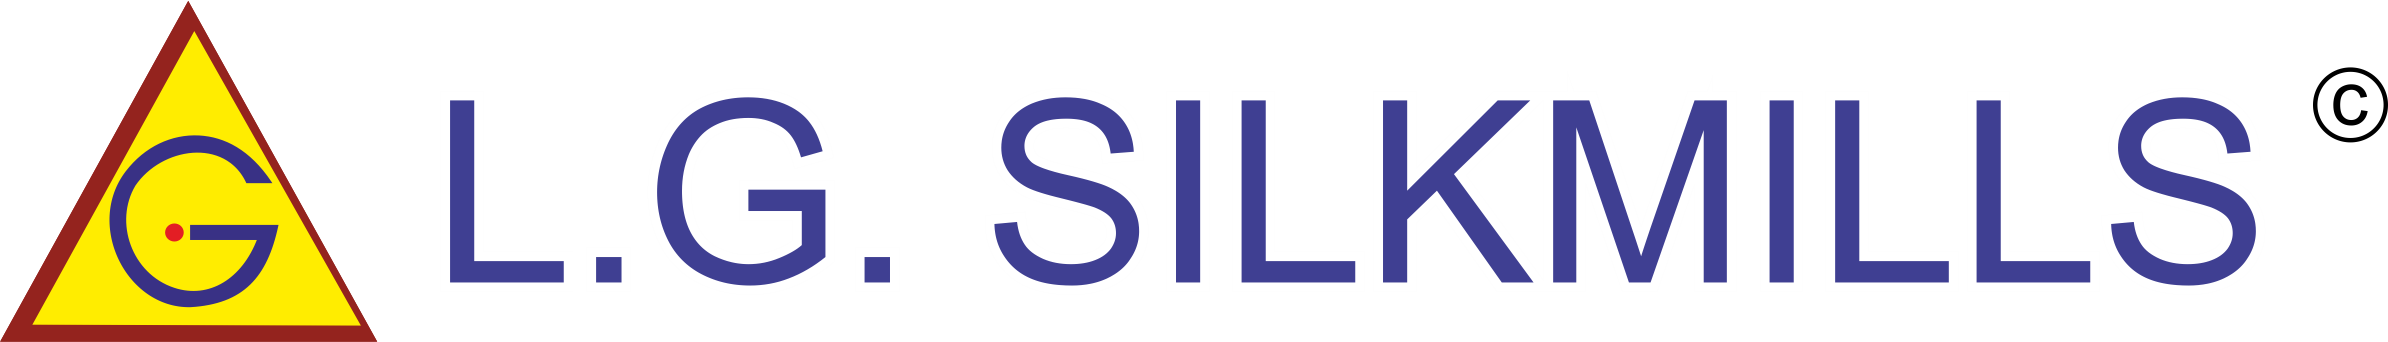 Lg Silk Mills